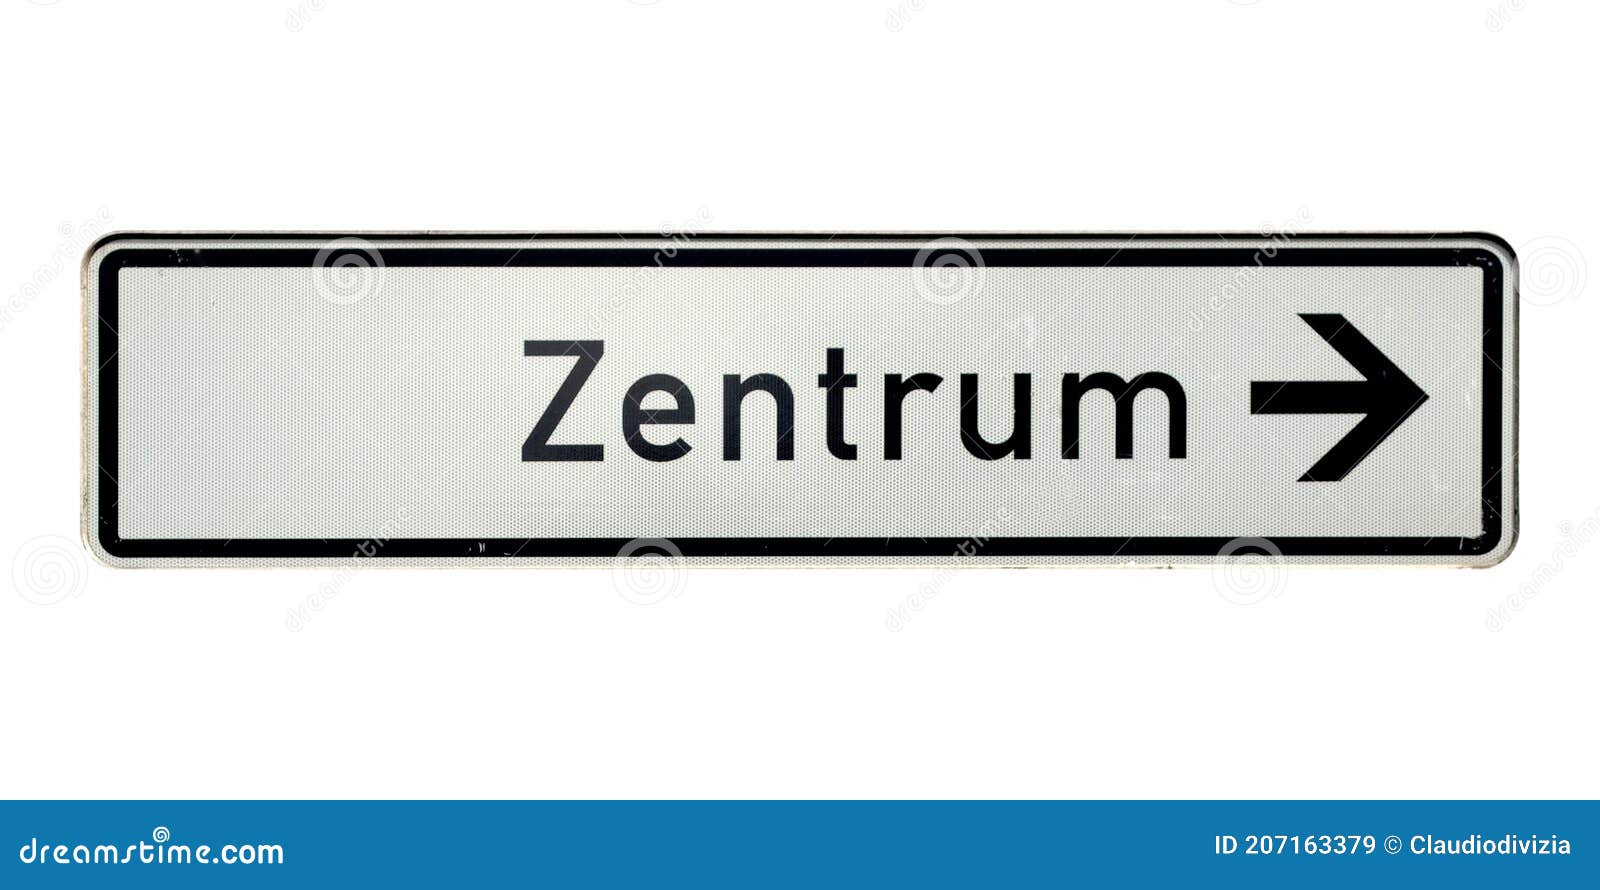 Deutsche Verkehrszeichen lizenzfreie Bilder, Stockfotos und